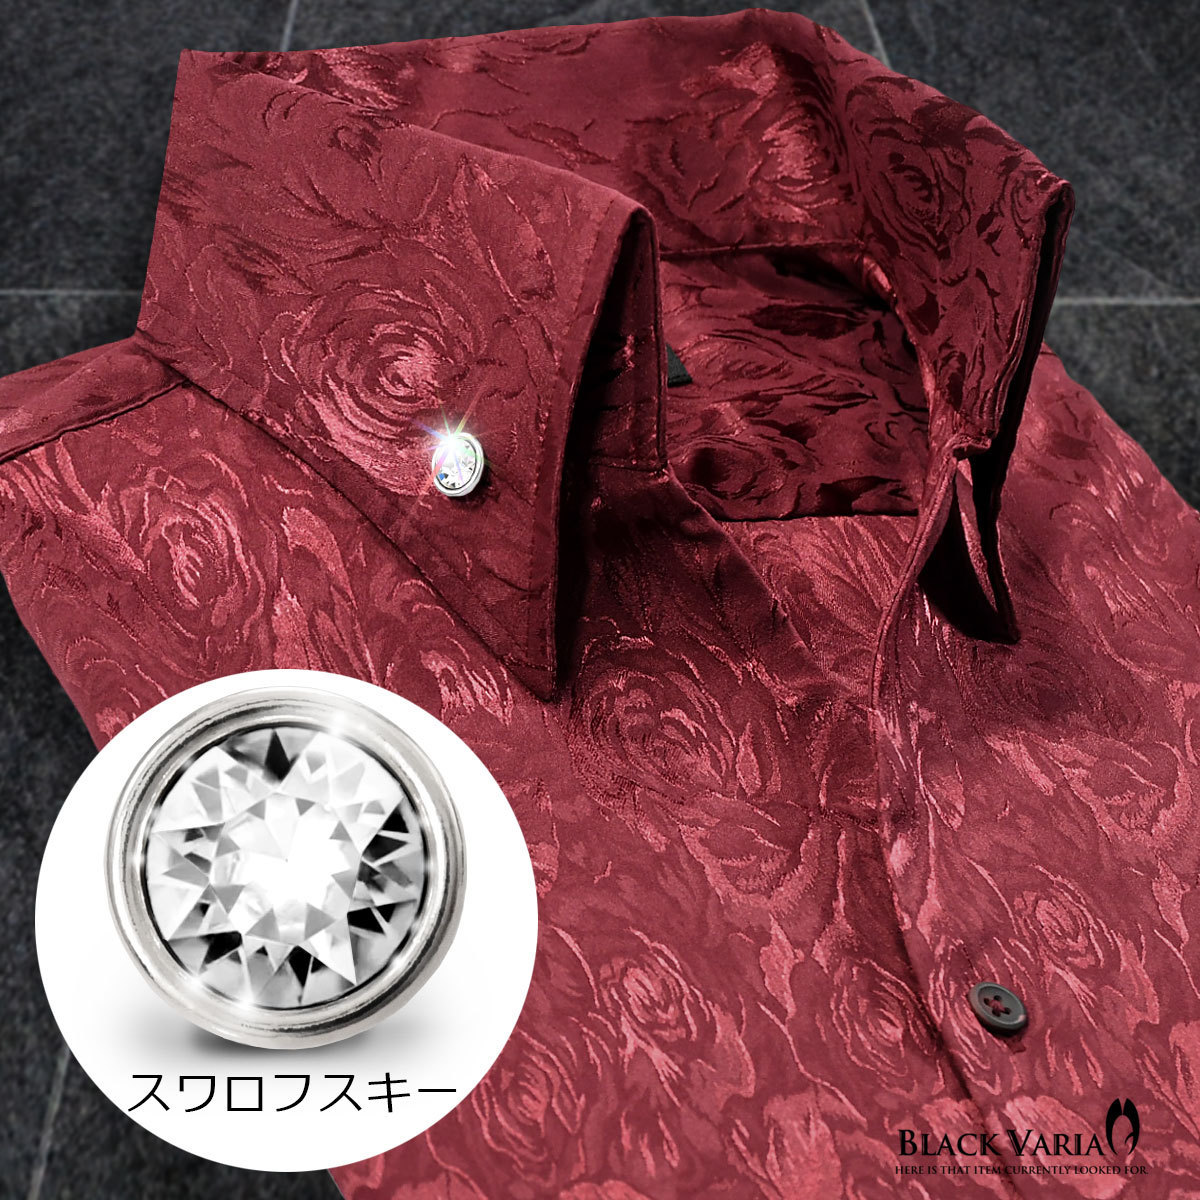 191254-winS BLACK VARIA ジャガード薔薇花柄 スキッパー スワロフスキーBD ドレスシャツ スリム メンズ(ブラックダイヤ釦・ワイン赤) L_襟元ボタンはブラックダイヤです